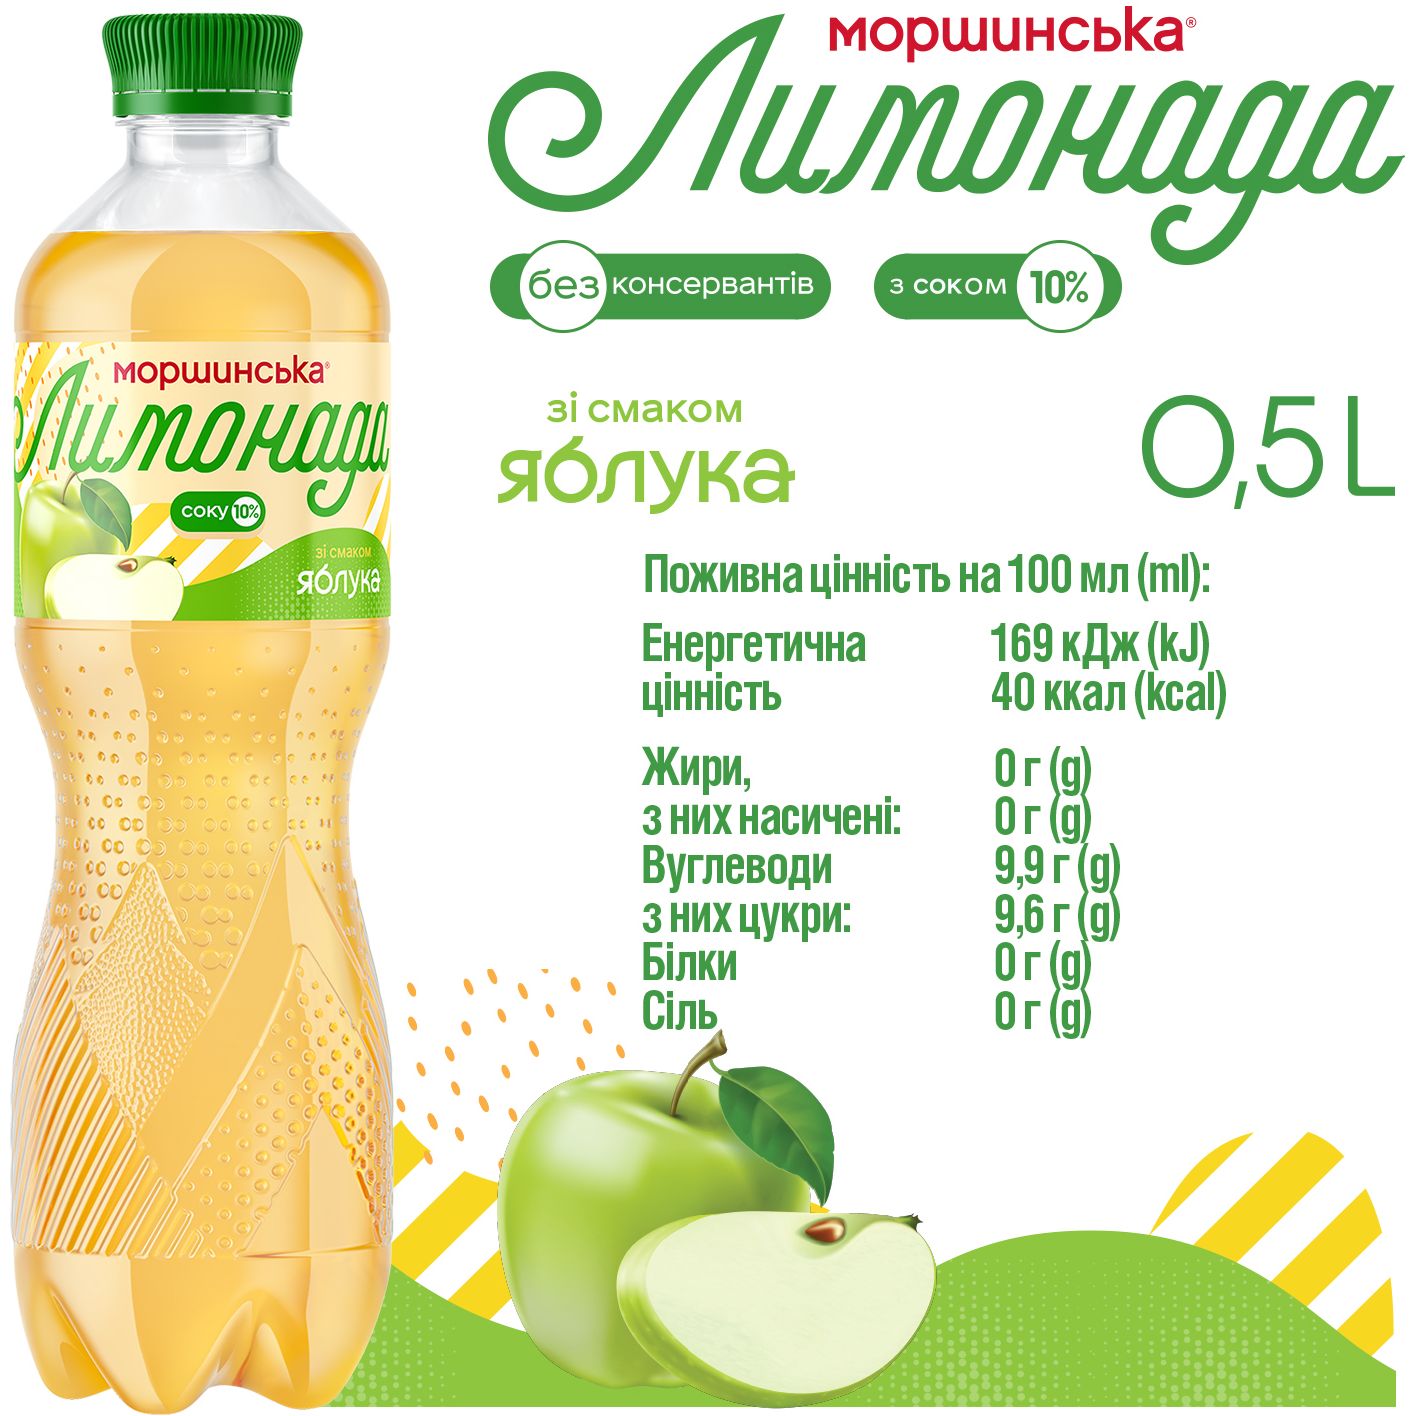 Напиток Моршинская Лимонада Яблоко среднегазированный 0.5 л - фото 4